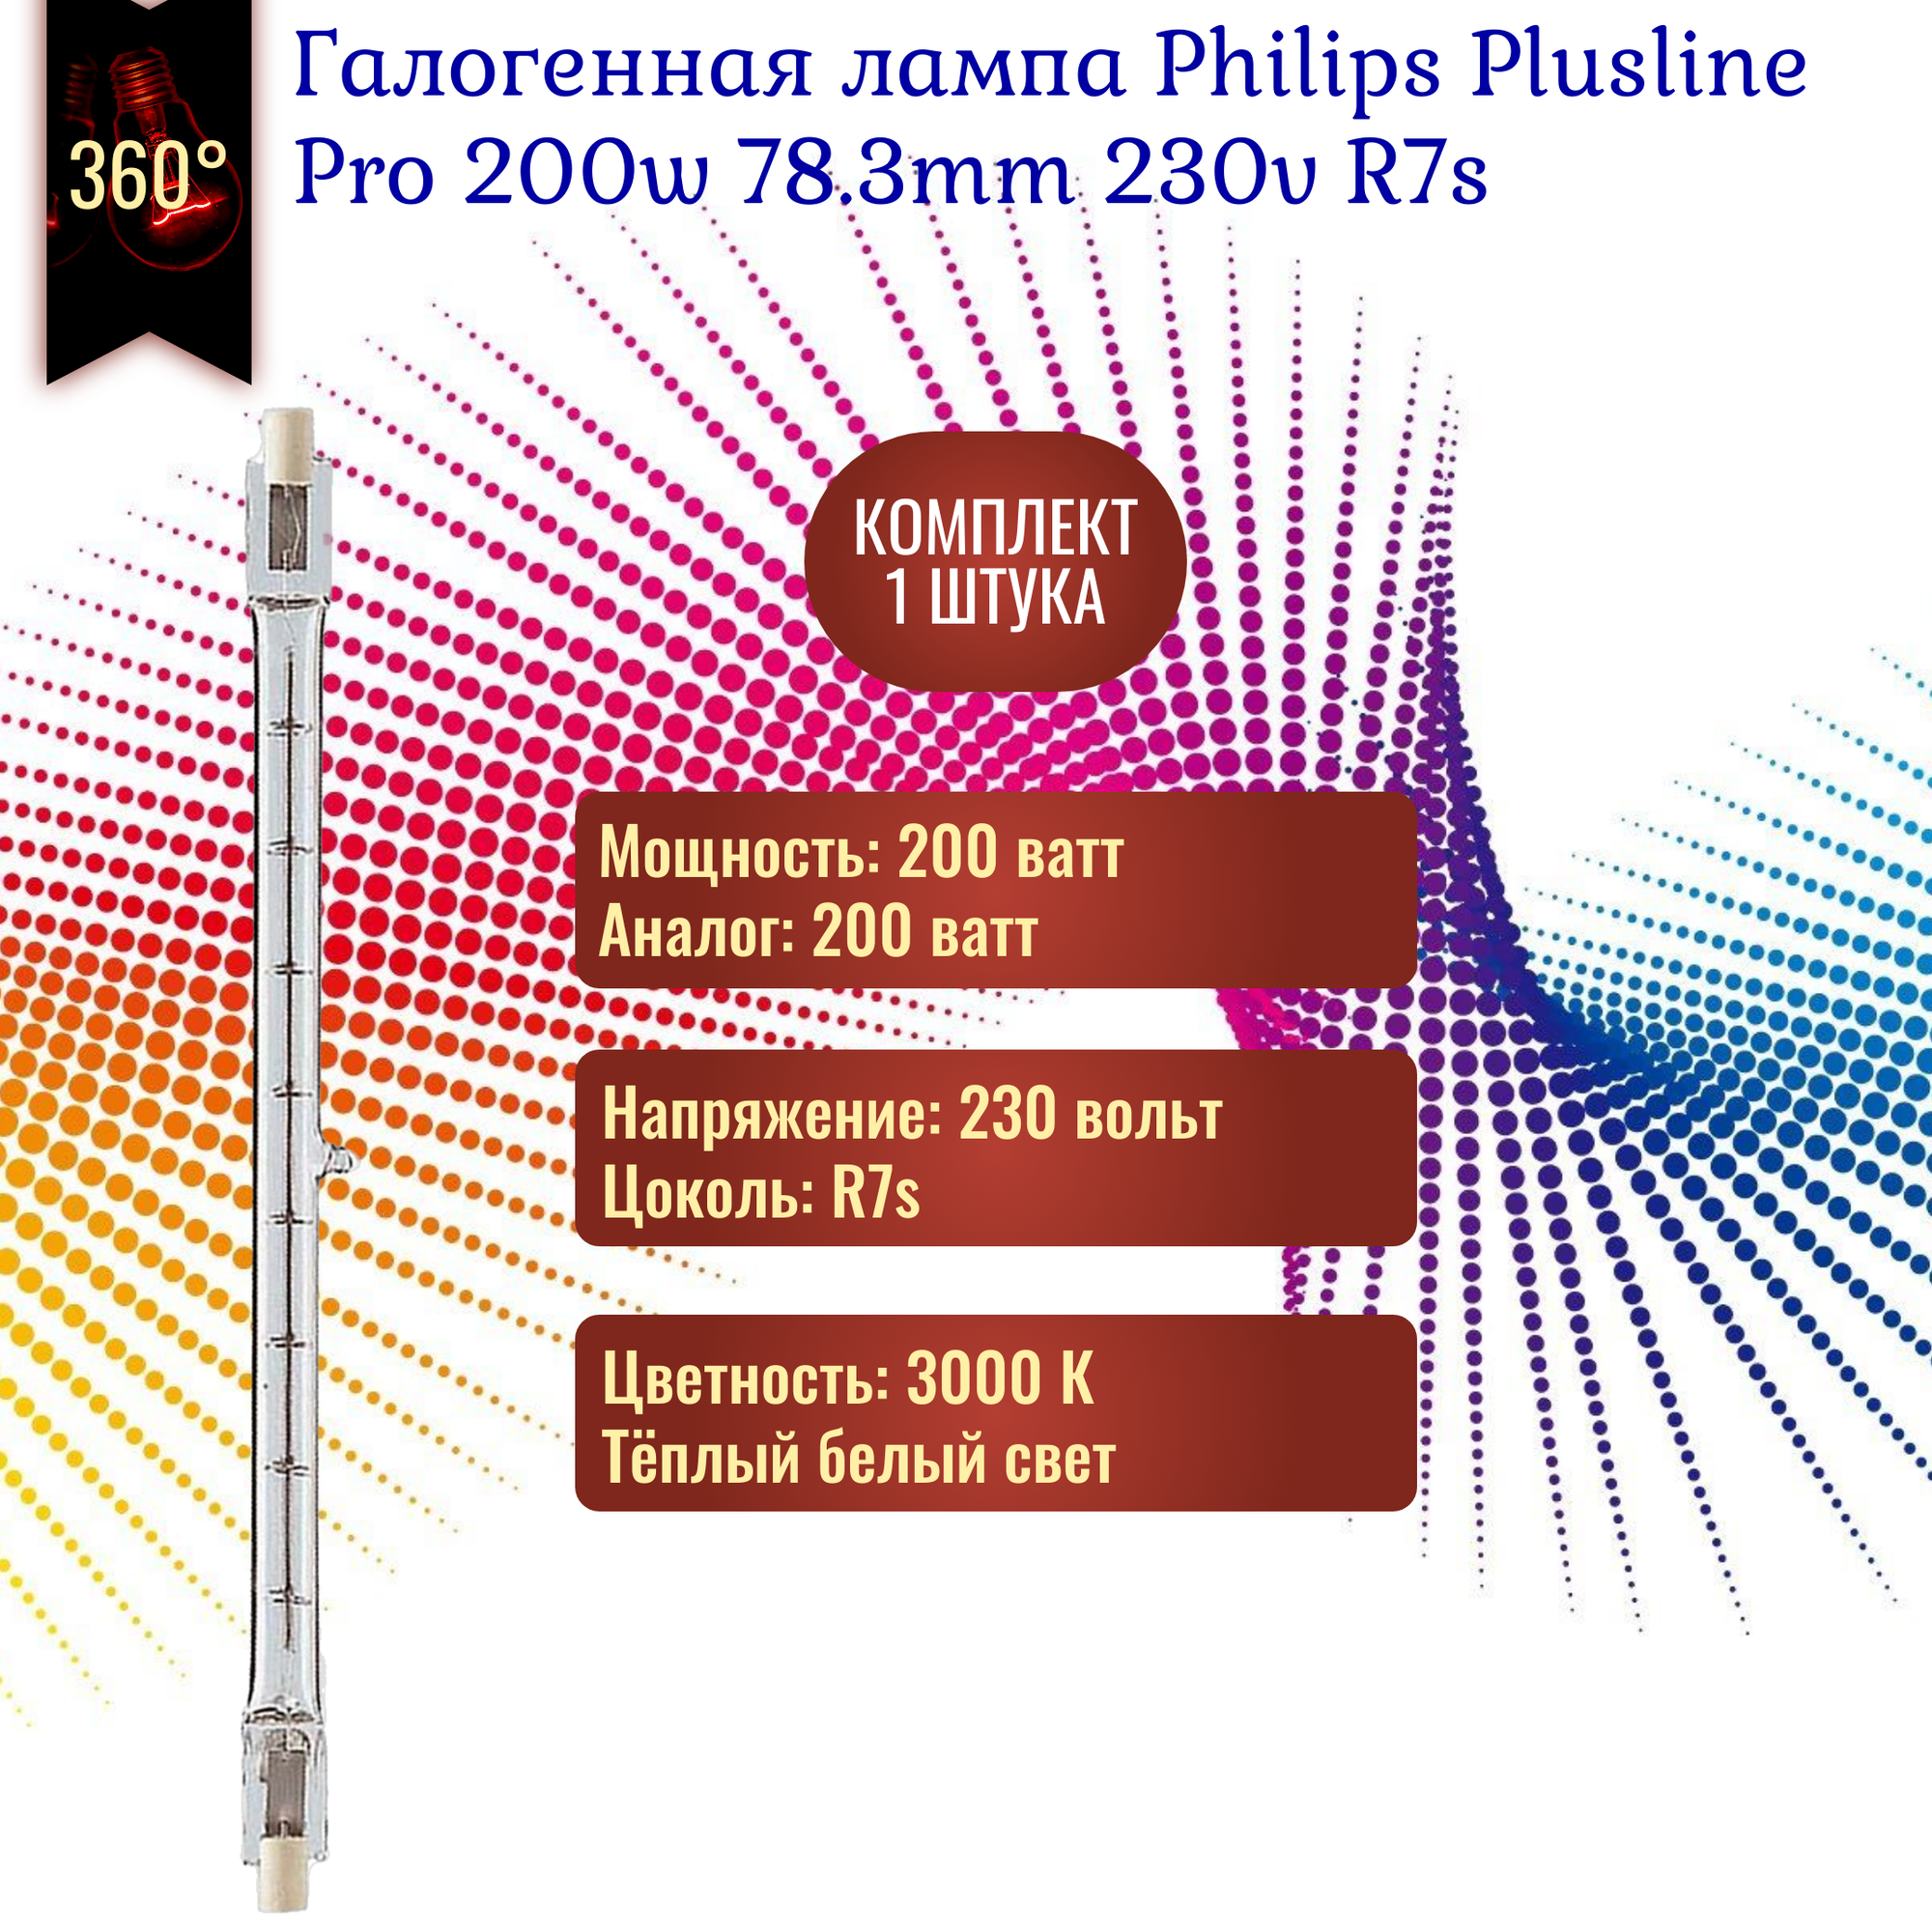 Лампочка Philips Plusline Pro 200w 78.3mm 230v R7s галогенная, теплый белый свет / 1 штука